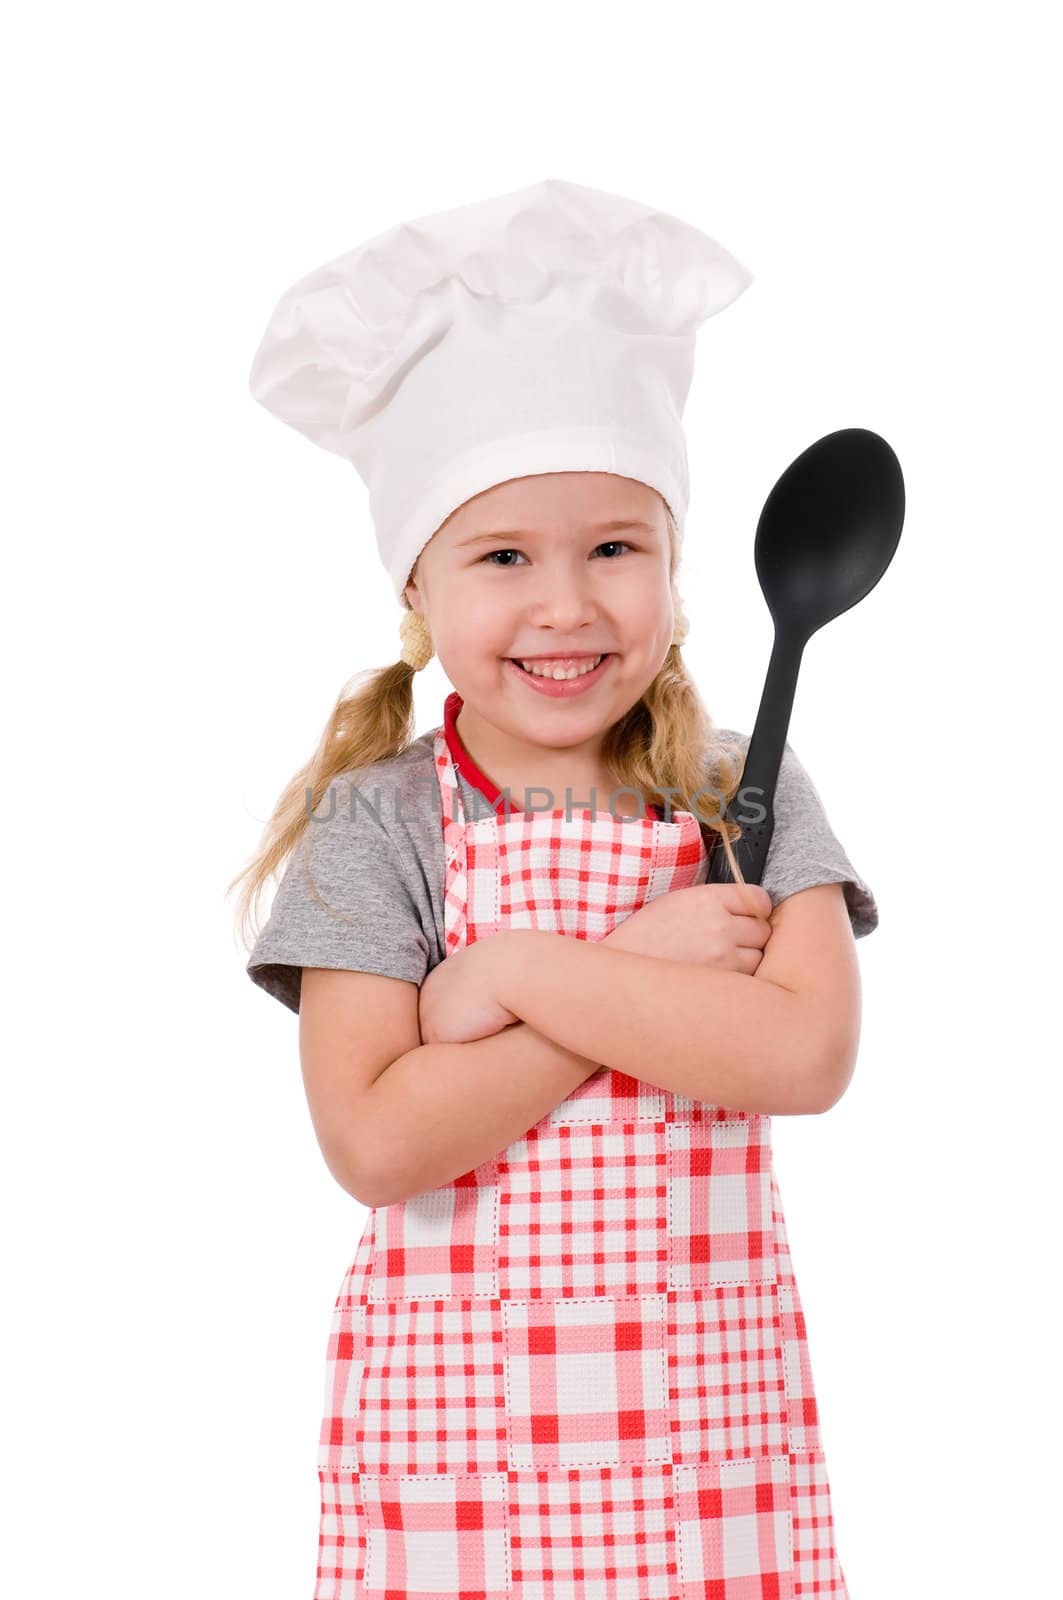 girl chef by uriy2007